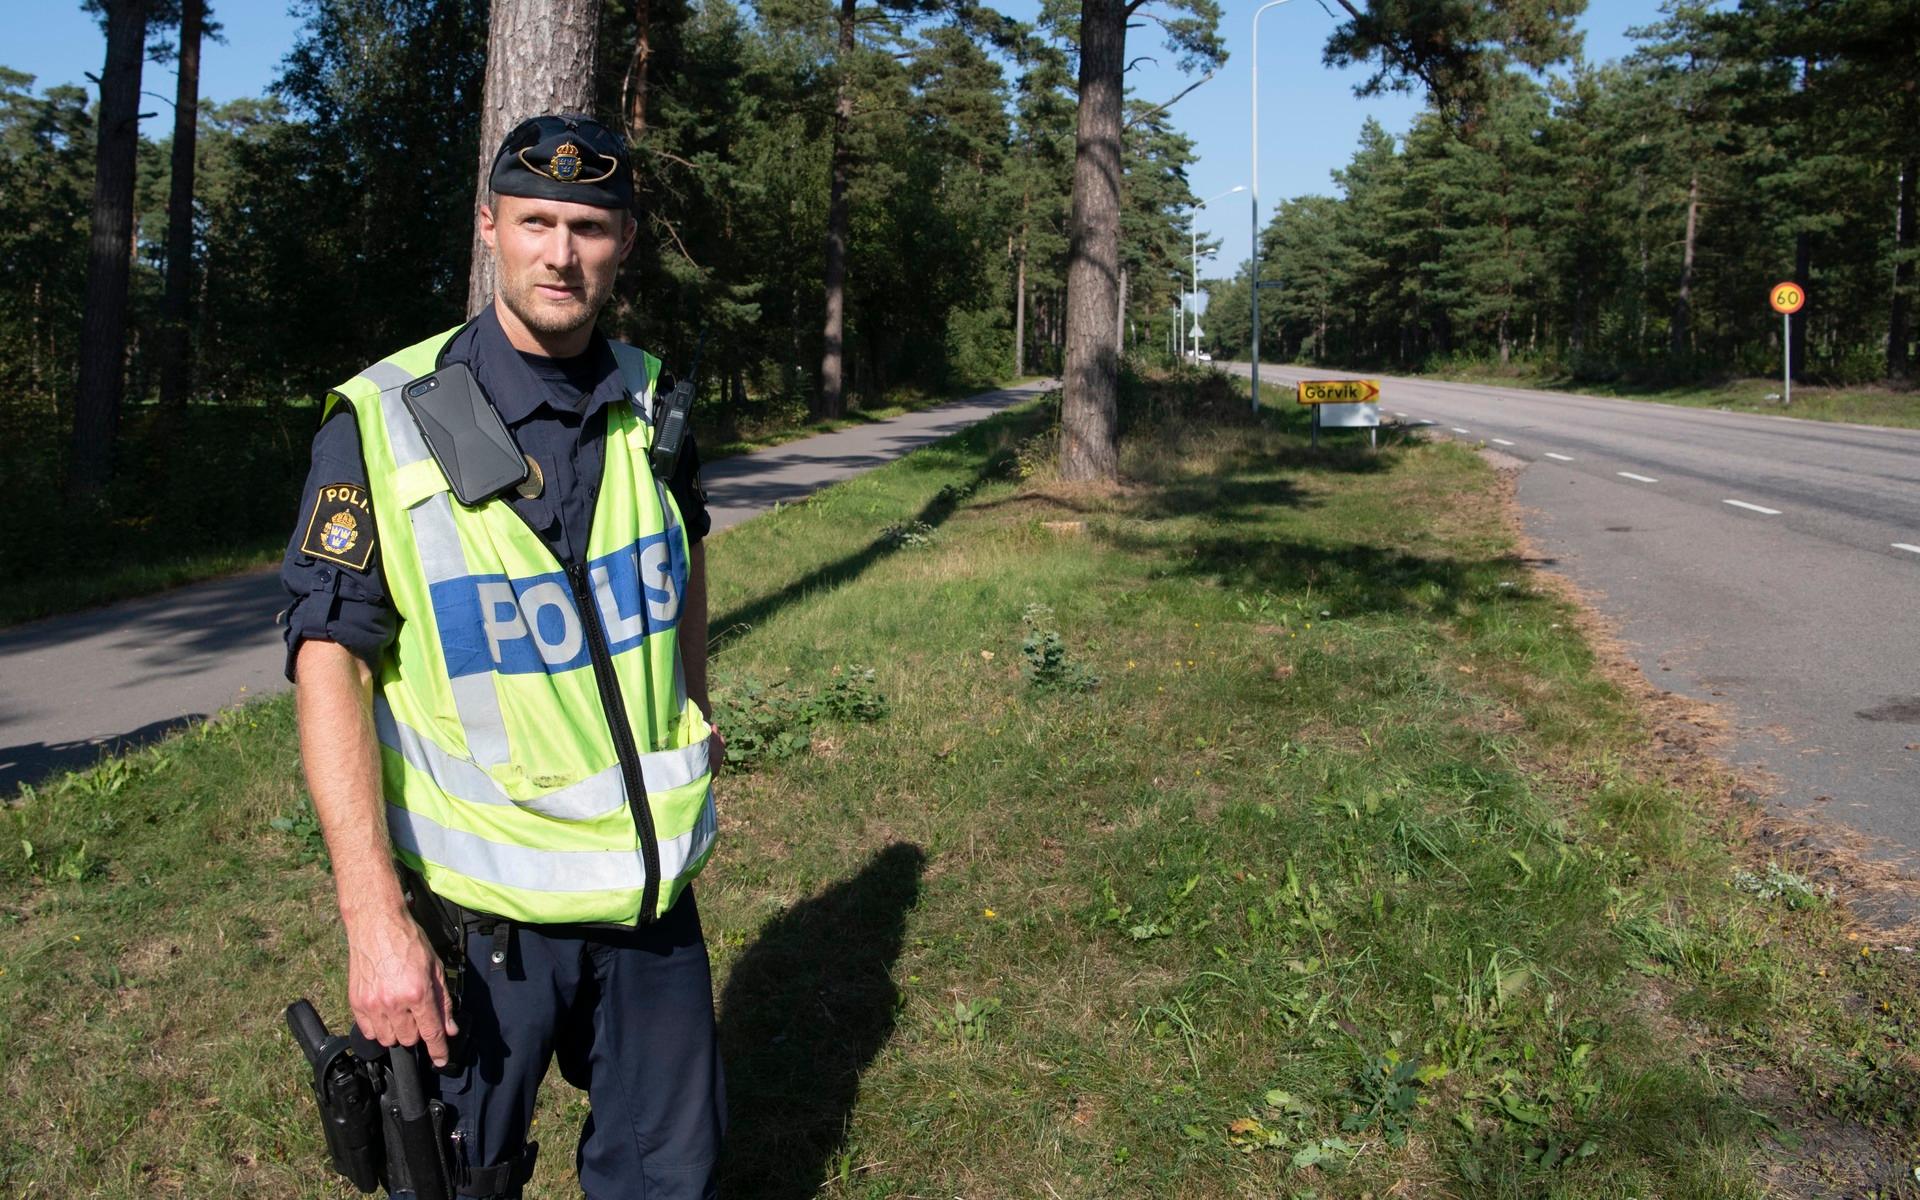 Ett antal böter för fordonsbrister och olovlig körning utfärdades under eftermiddagen berättar polisen Daniel Stenström.